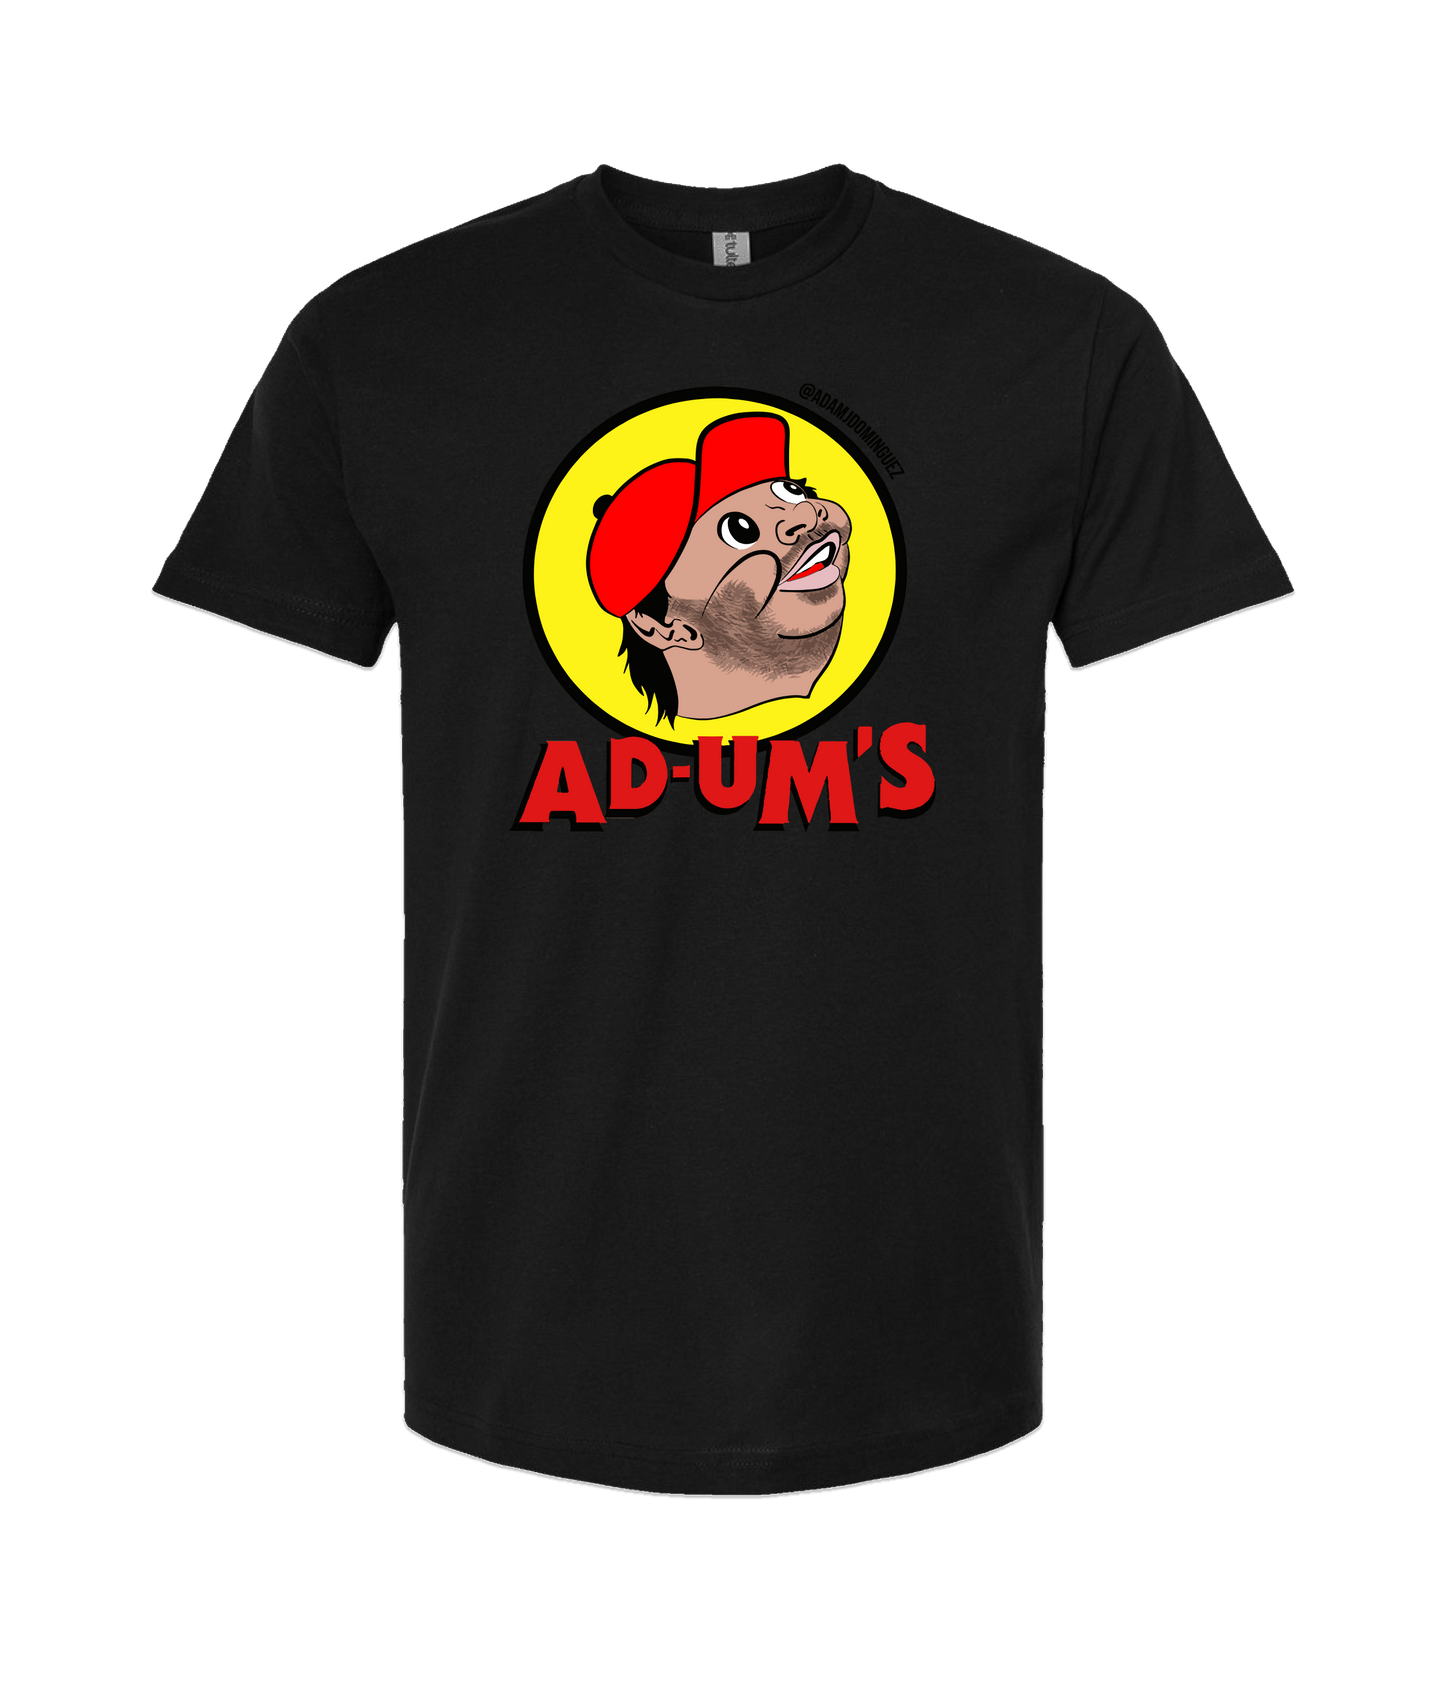 Adam Dominguez - AD-UM'S - Black T-Shirt